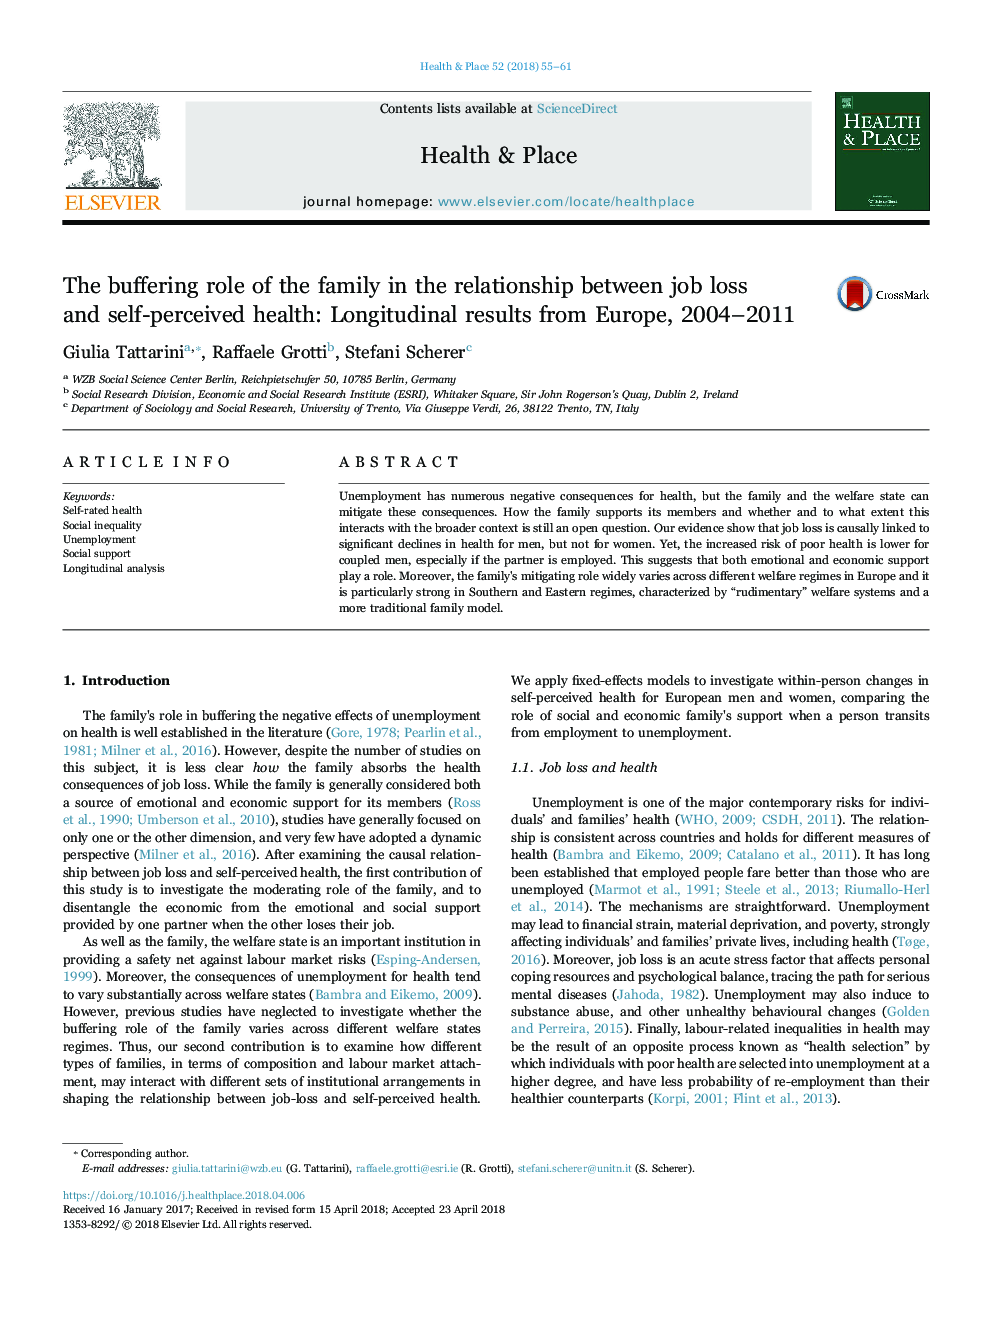 نقش بافری در خانواده در رابطه بین کاهش شغل و سلامت درک شده خود: نتایج طولی از اروپا 2004-2011 